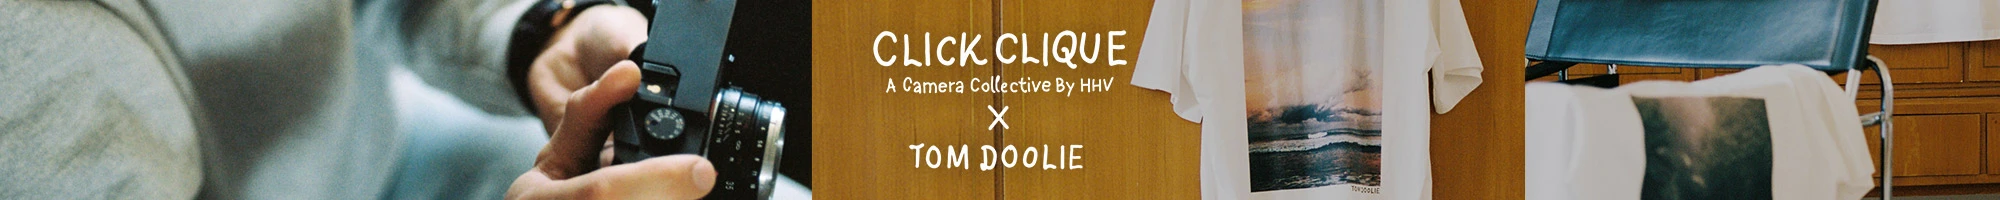 Click Clique x Tom Doolie Header